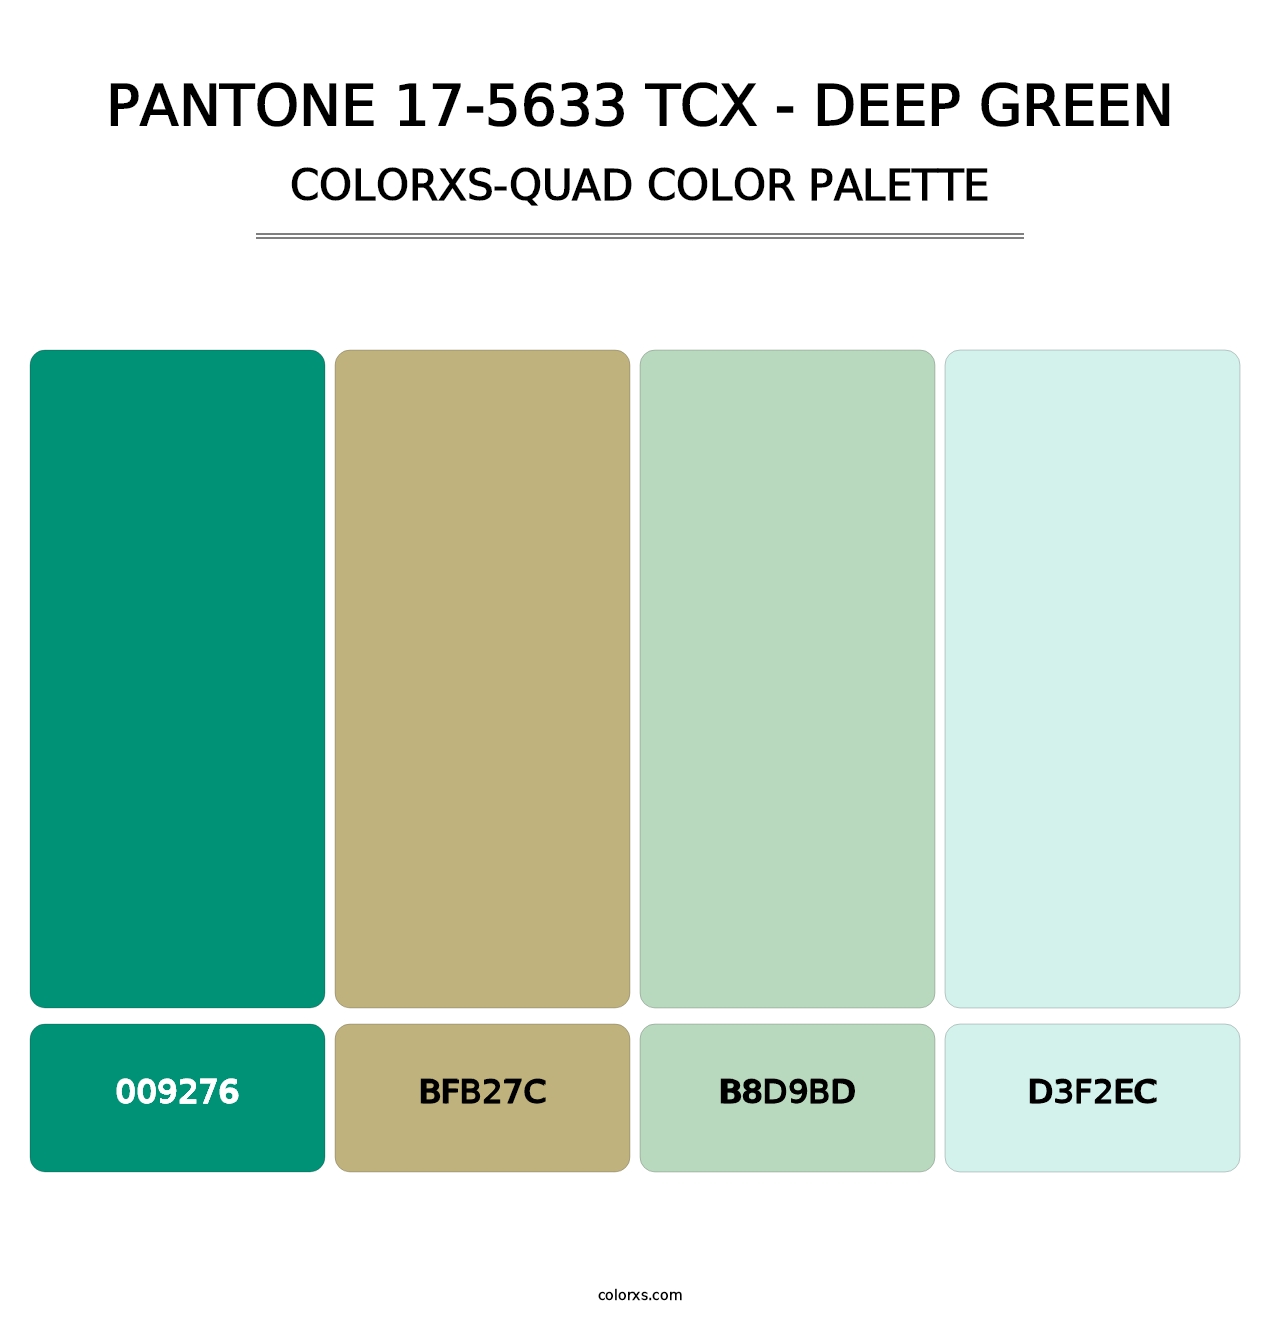 PANTONE 17-5633 TCX - Deep Green - Colorxs Quad Palette